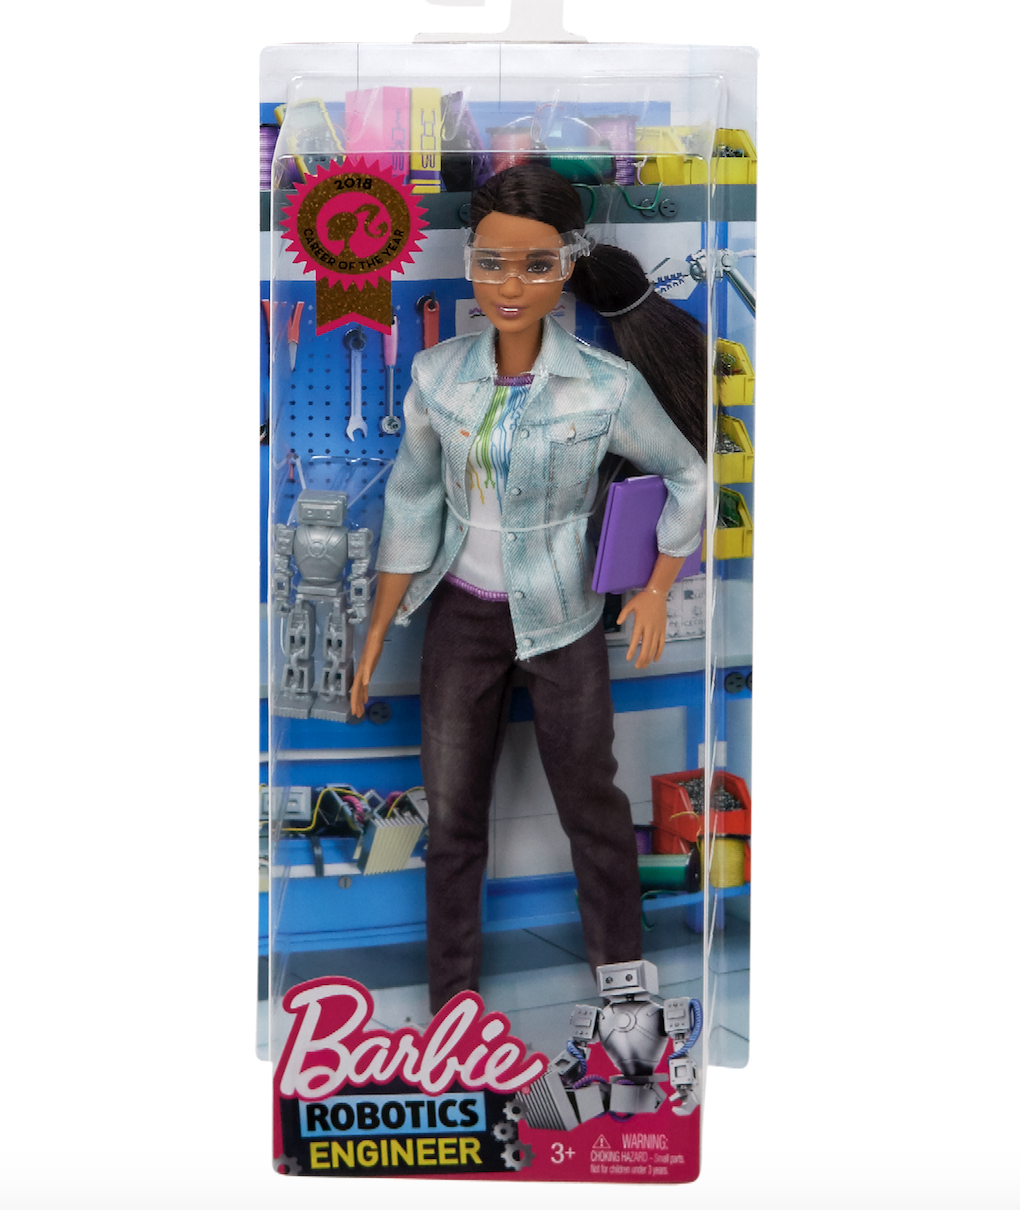 barbie-packaging.jpg